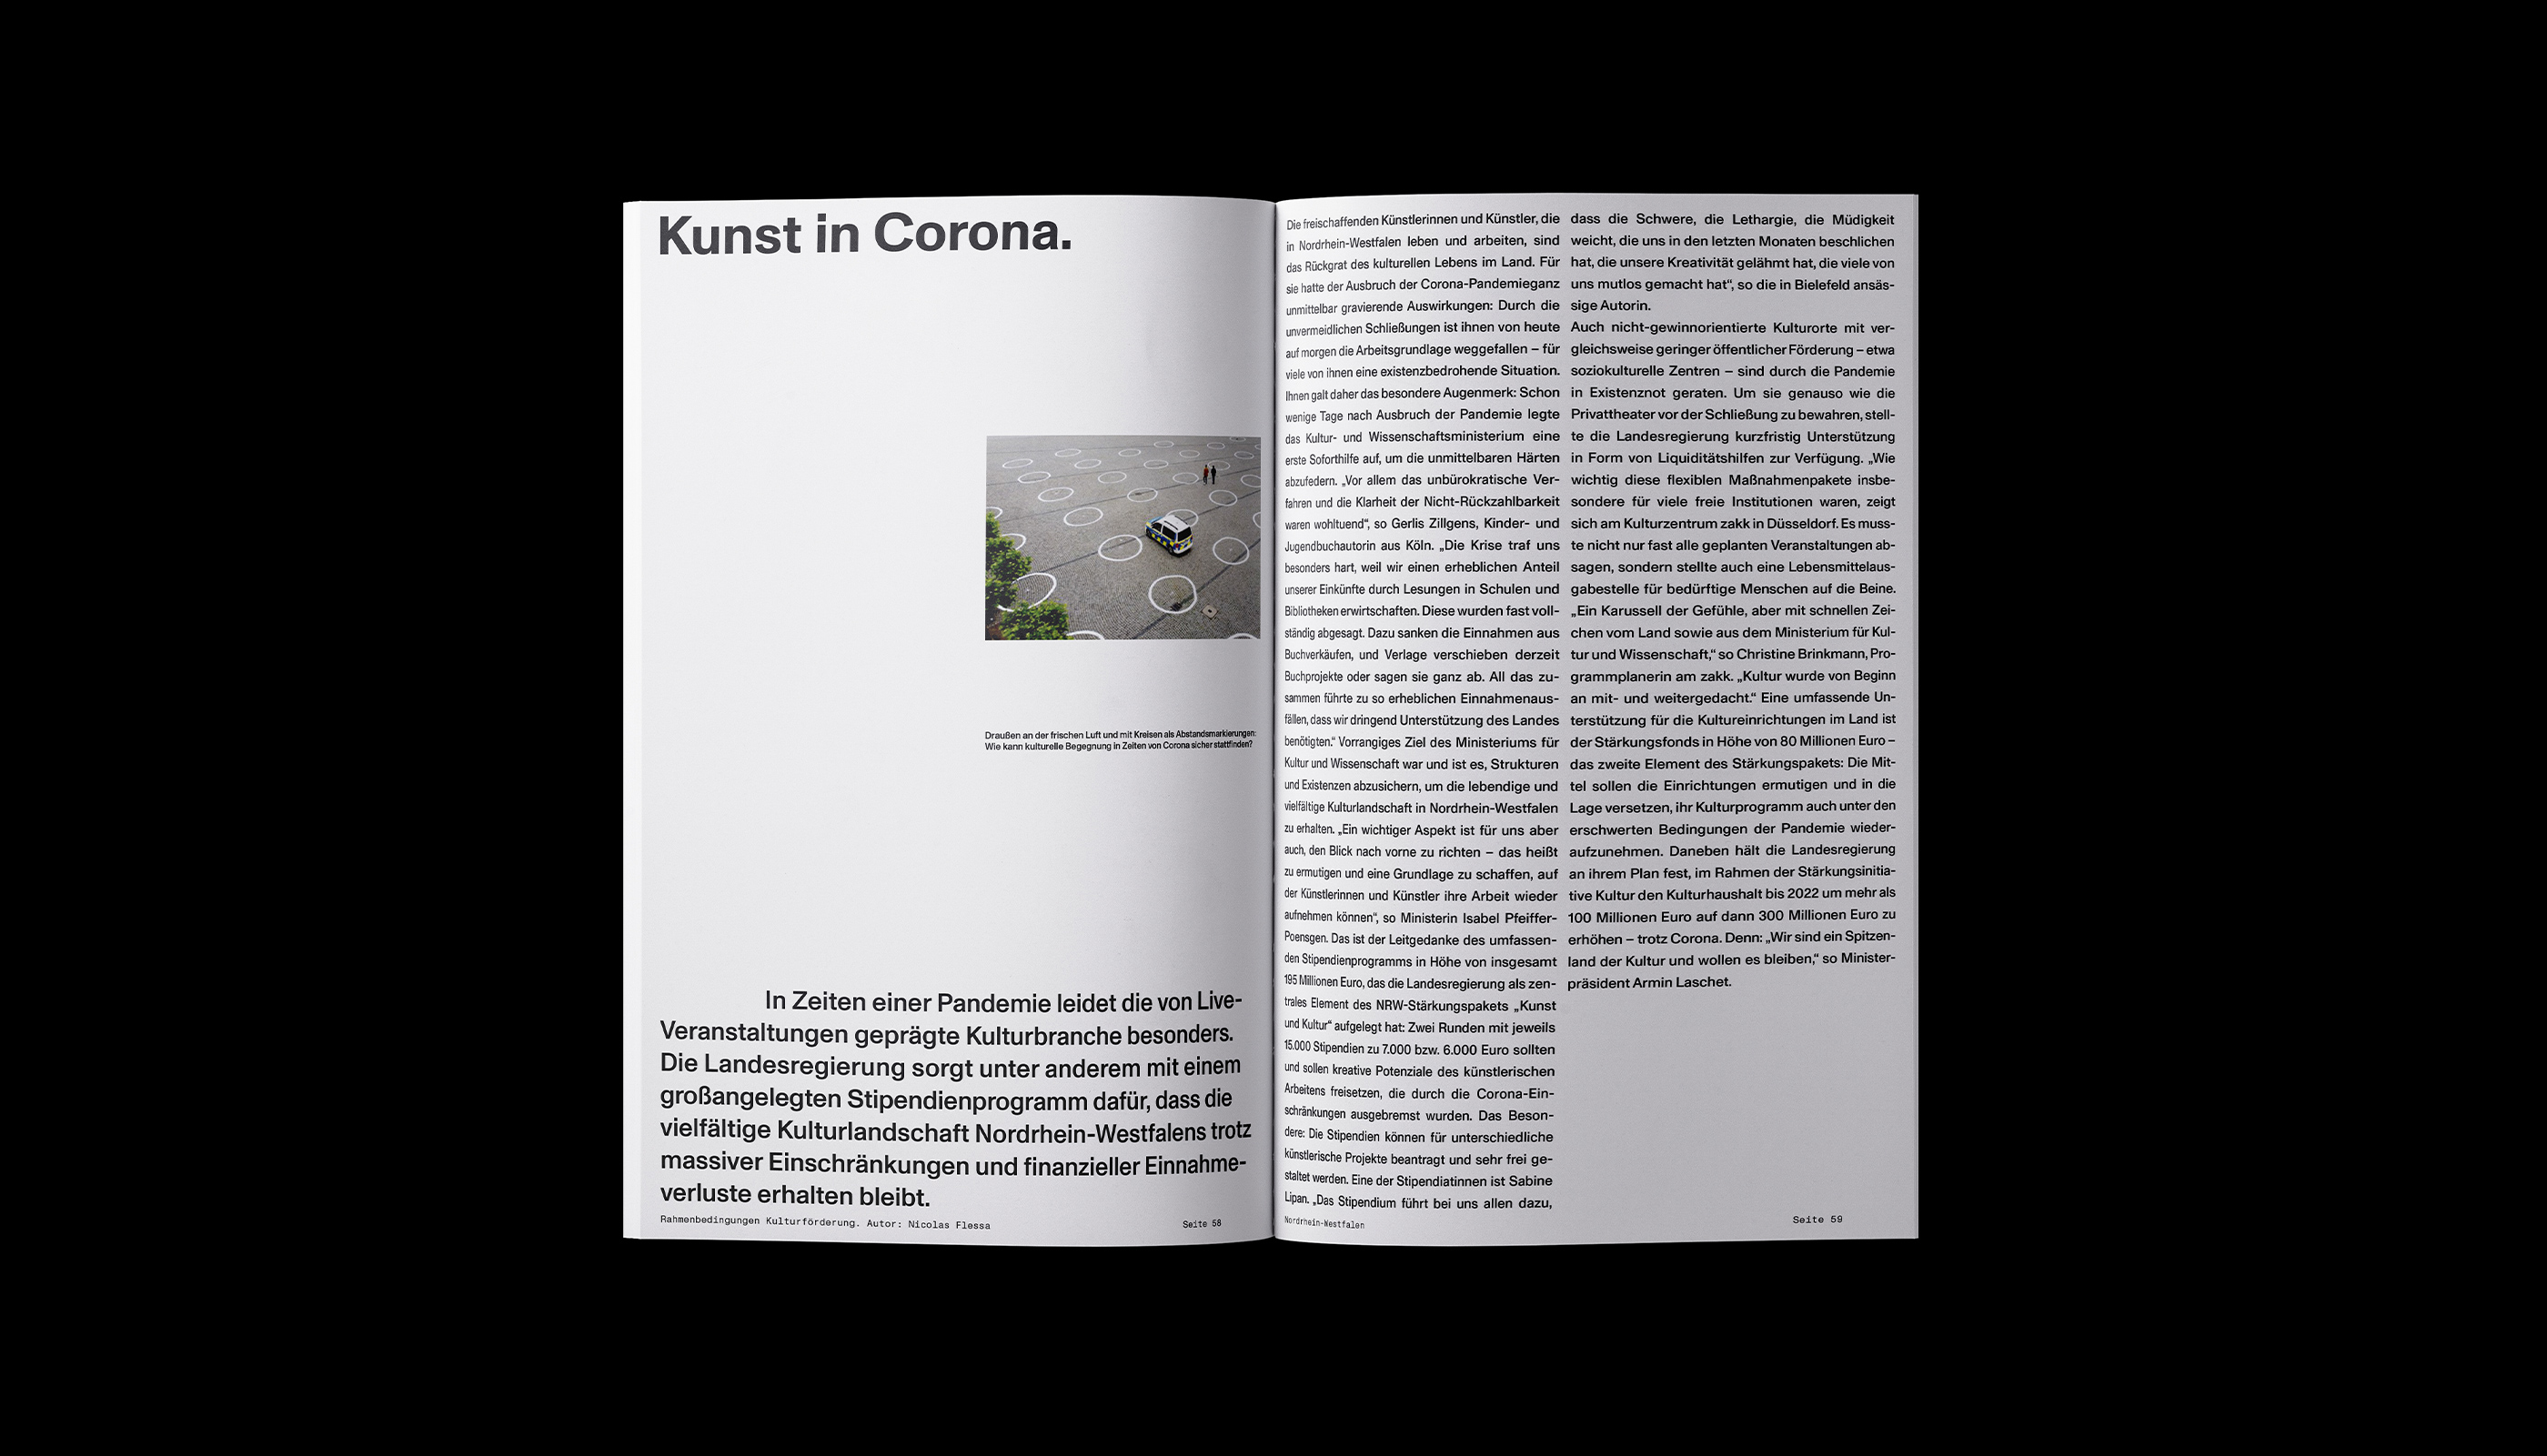 Ministerium für Kultur und Wissenschaft Nordrhein-Westfalen, Publication, editorial design, Katalog, Buch, Magazin, Art direction